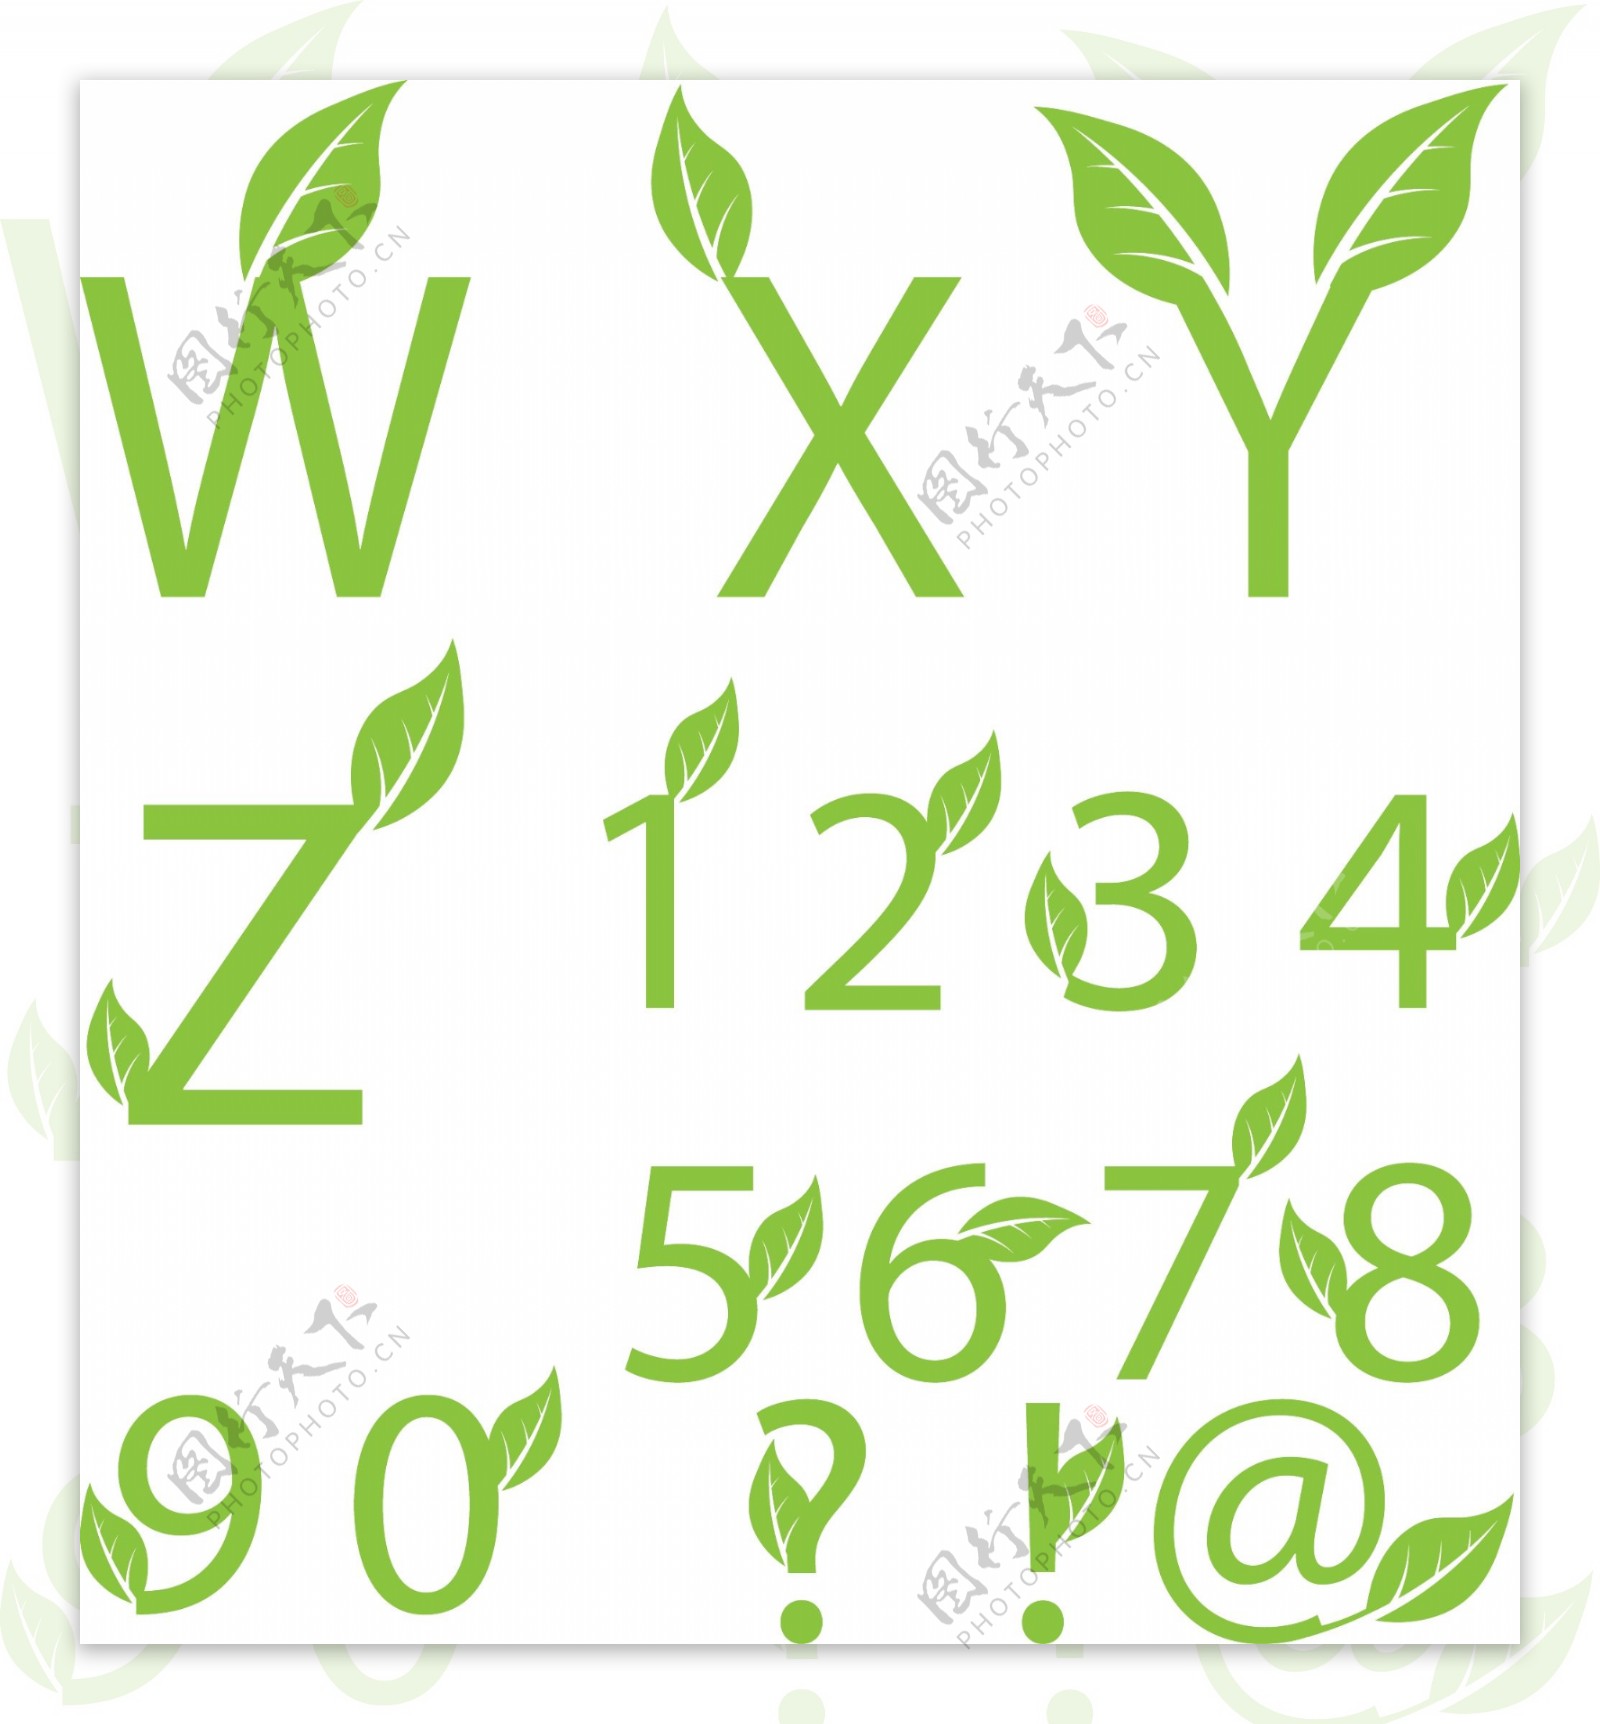 鲜绿色的叶子装饰字体矢量素材